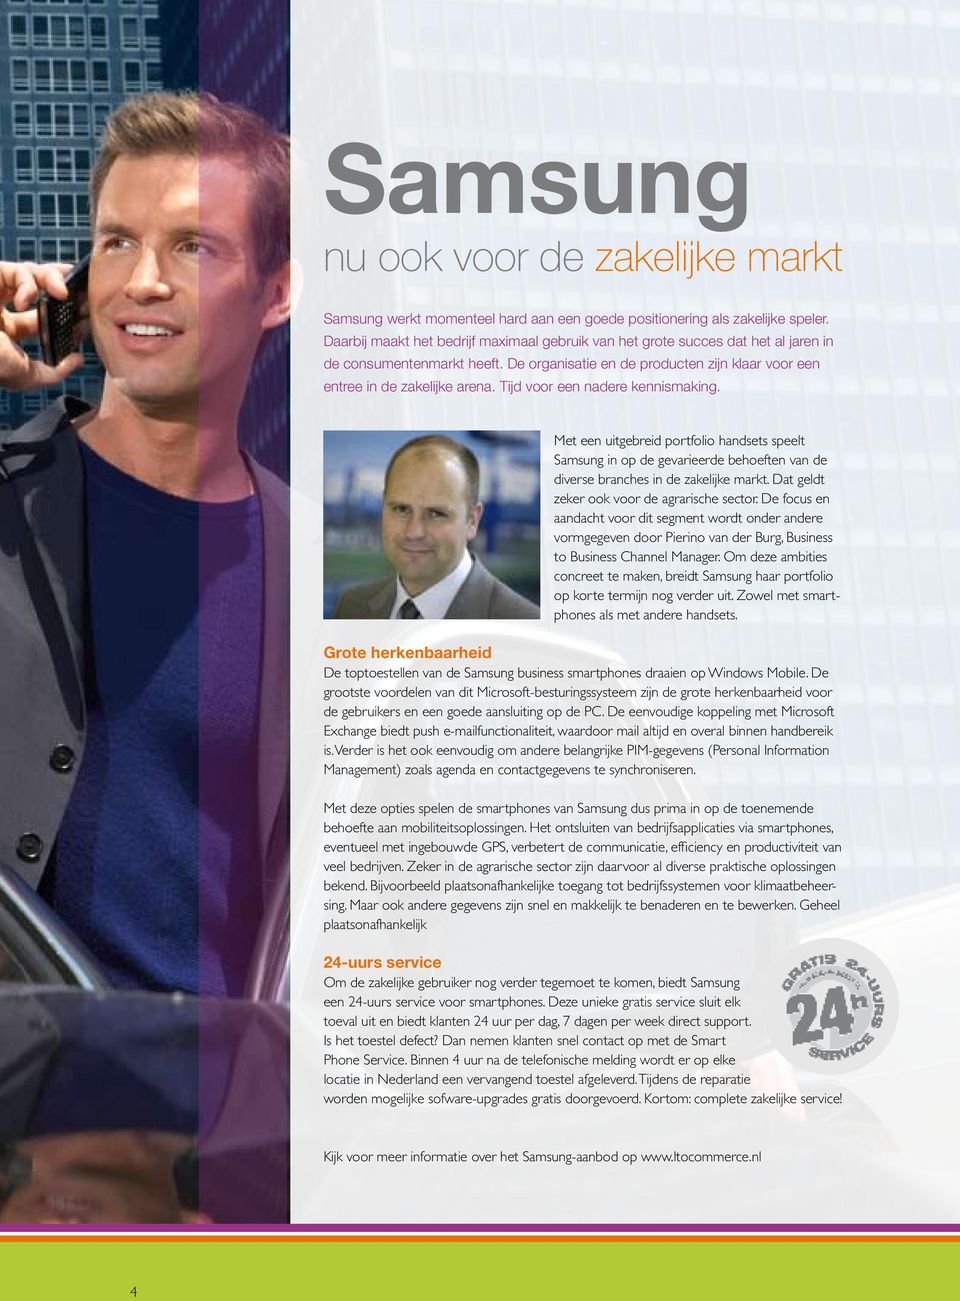 Tijd voor een nadere kennismaking. Met een uitgebreid portfolio handsets speelt Samsung in op de gevarieerde behoeften van de diverse branches in de zakelijke markt.